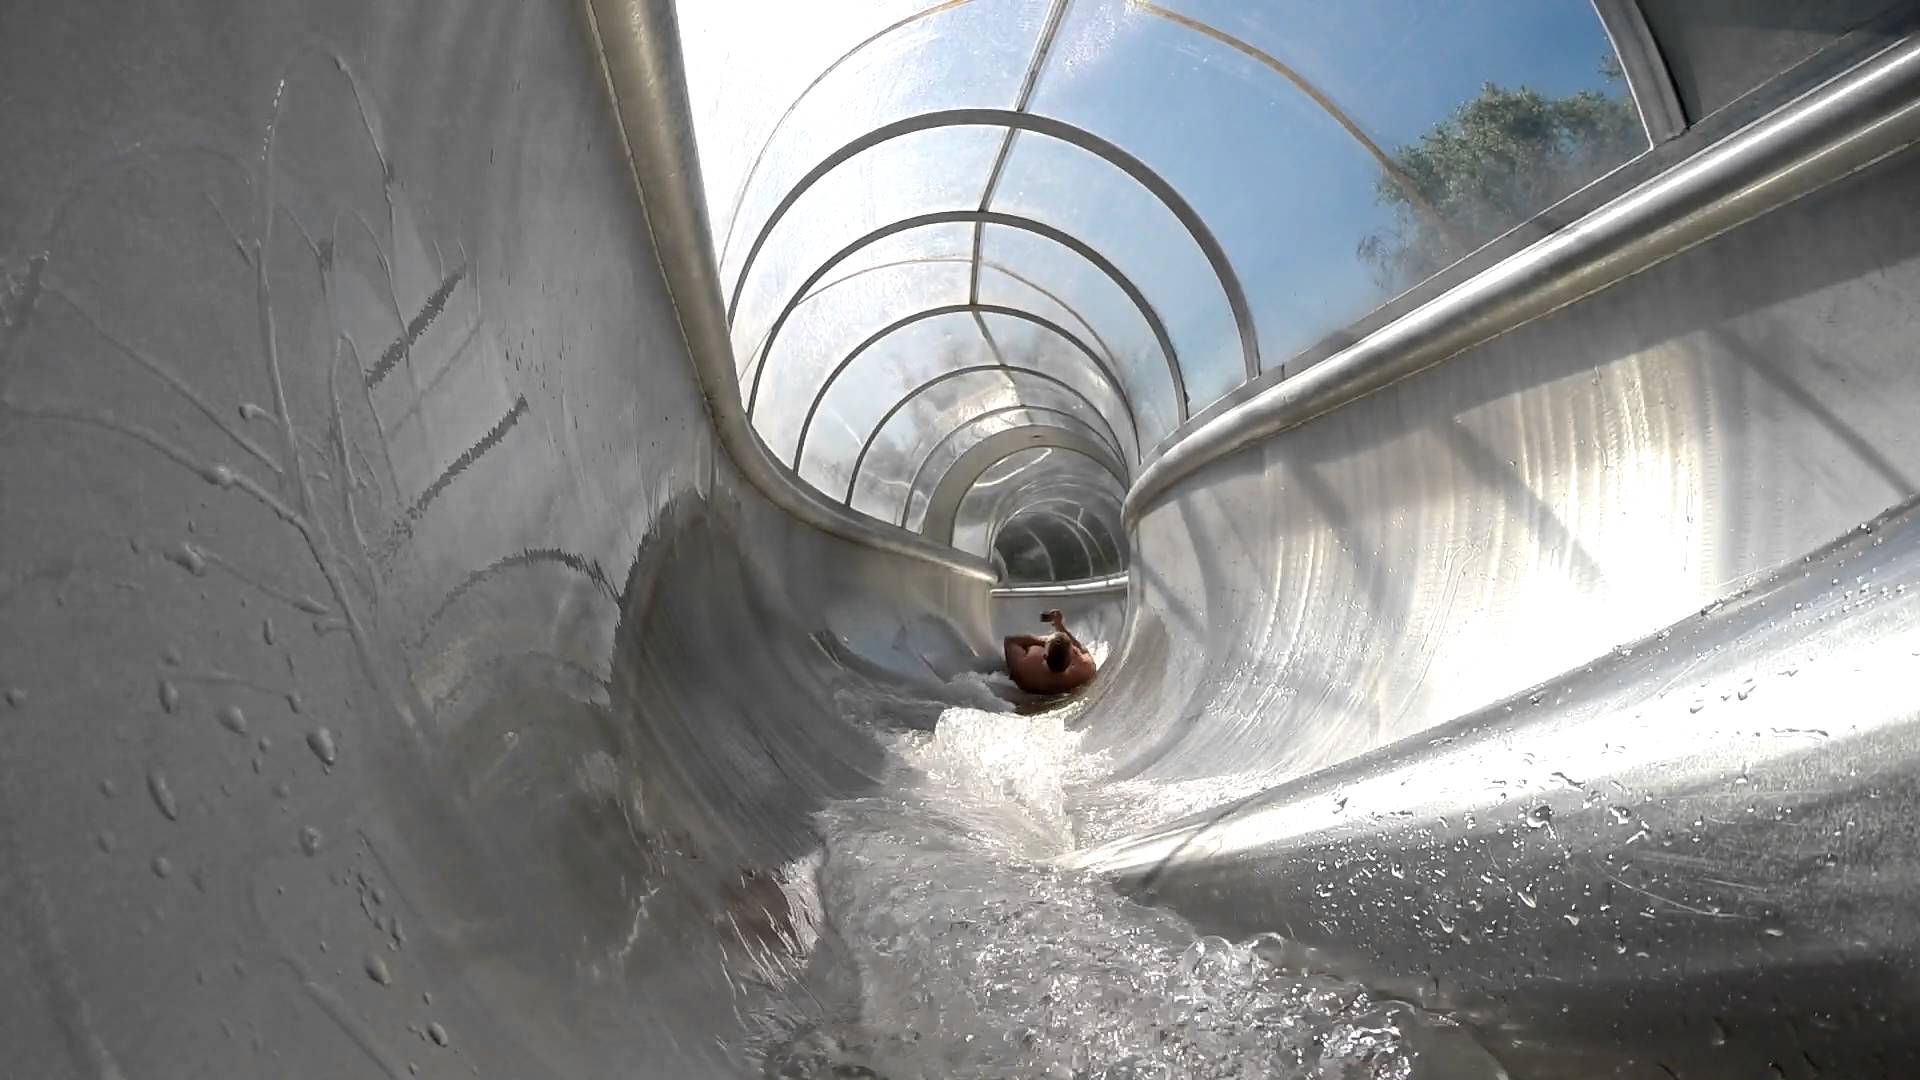 Tunnelrutsche mit Plexiglas-Überdachung | Südbad Bremen